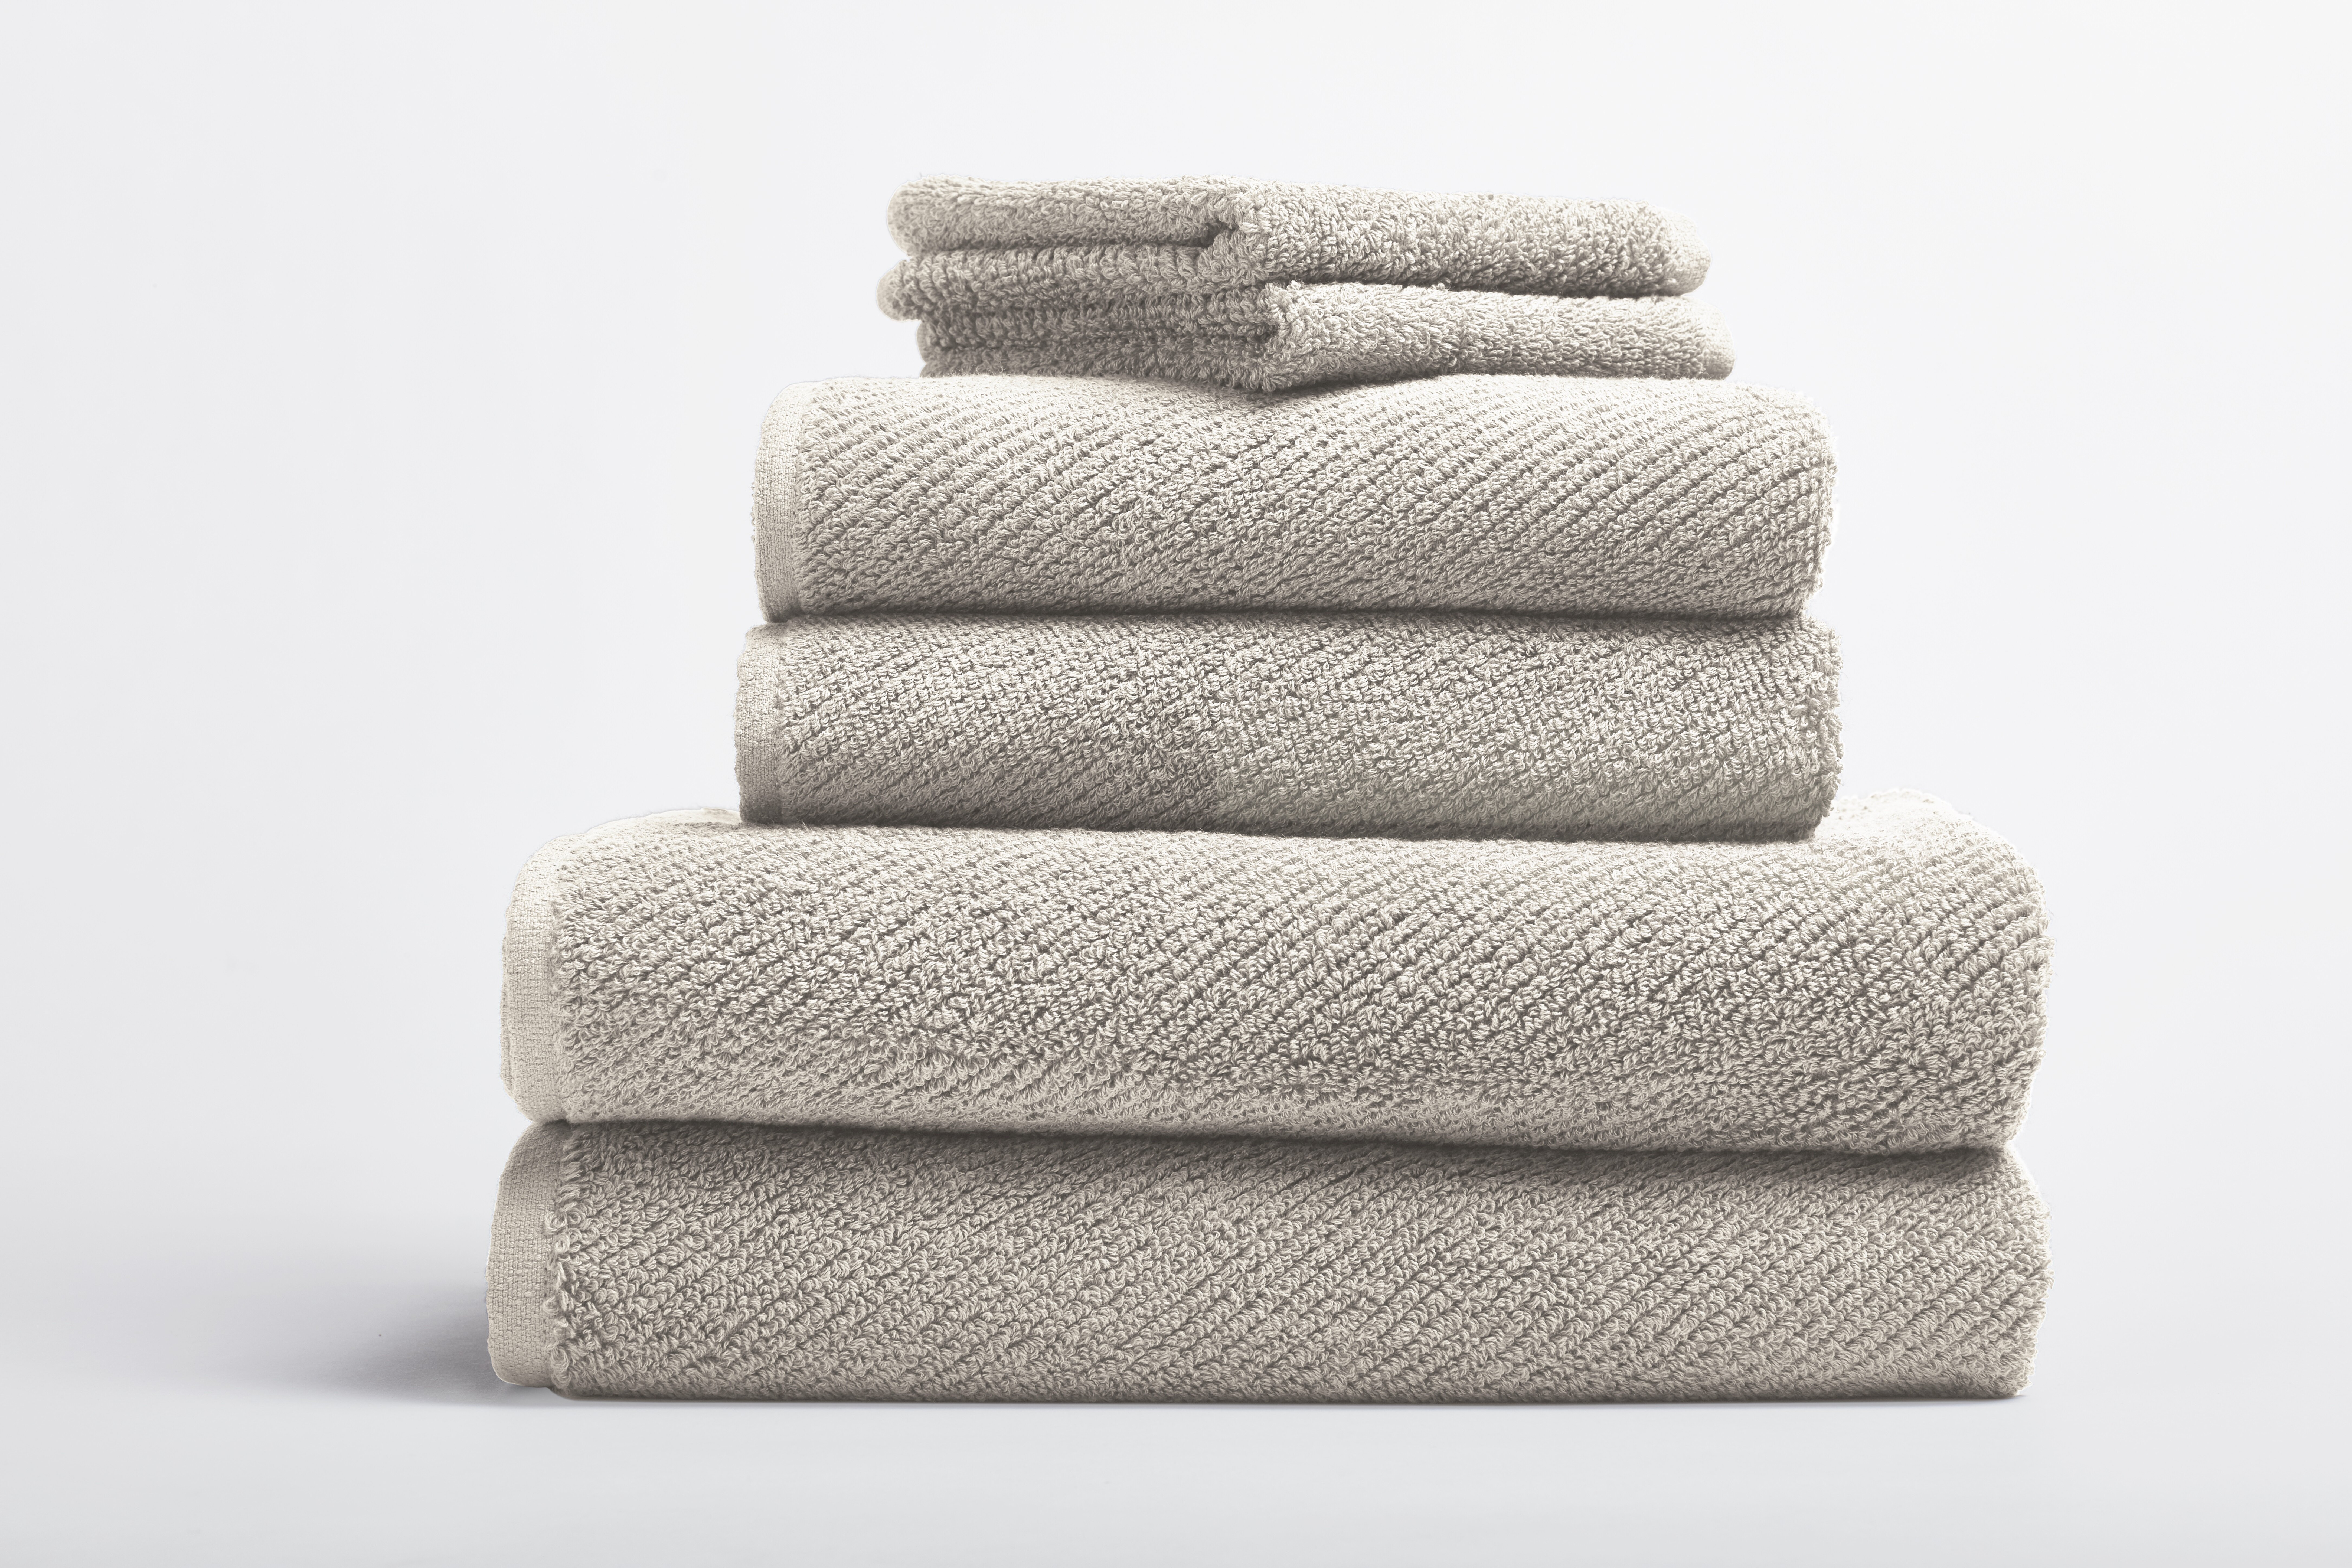 https://assets.wfcdn.com/im/87235386/compr-r85/6472/64725480/air-weight-organic-100-cotton-bath-towels.jpg